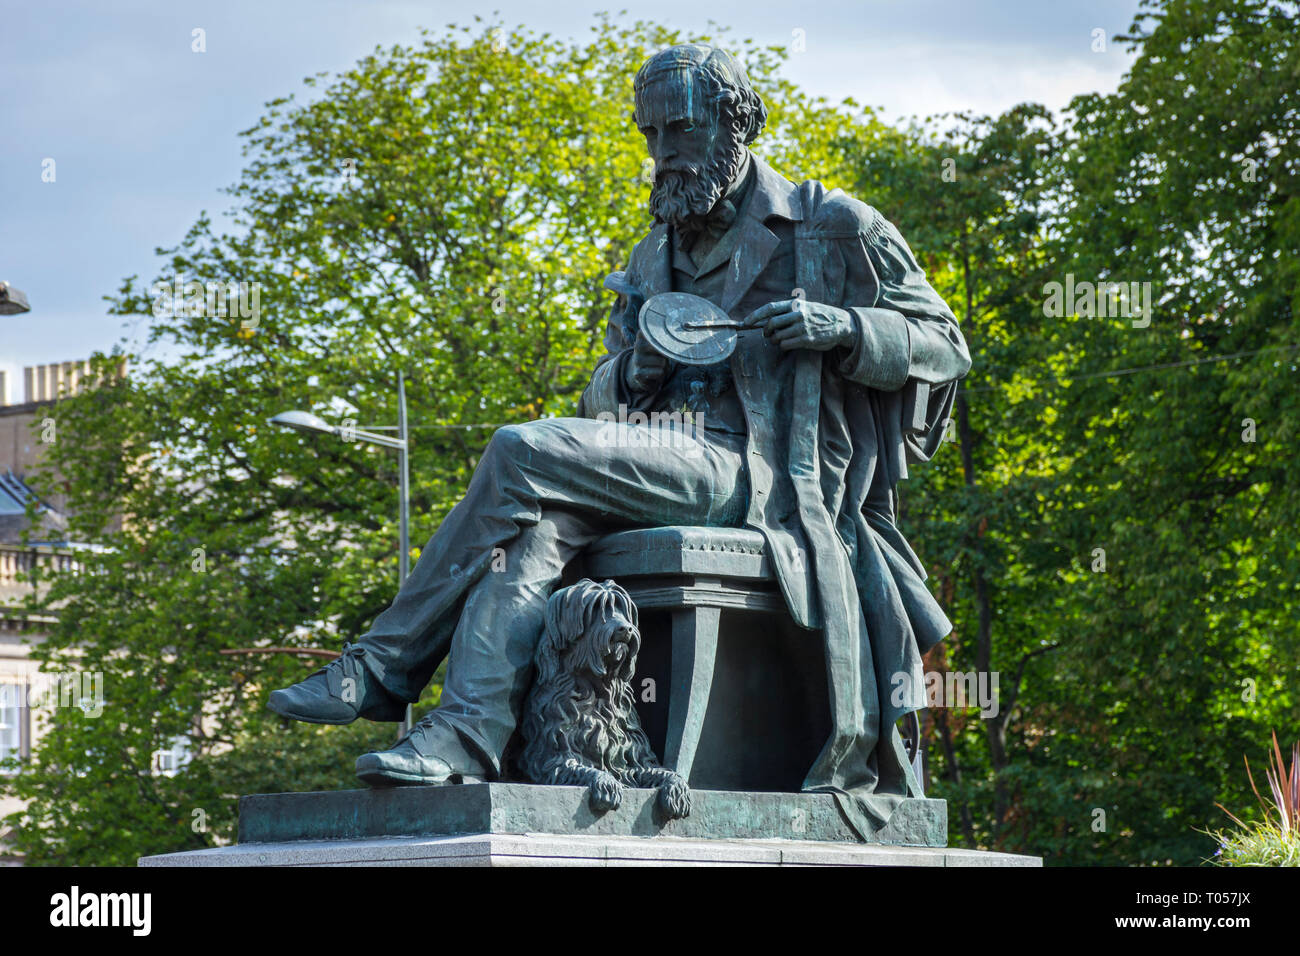 Statue der Physiker James Clerk Maxwell, von Alexander Stoddart (vorgestellt 2008), George Street, Edinburgh, Schottland, Großbritannien Stockfoto